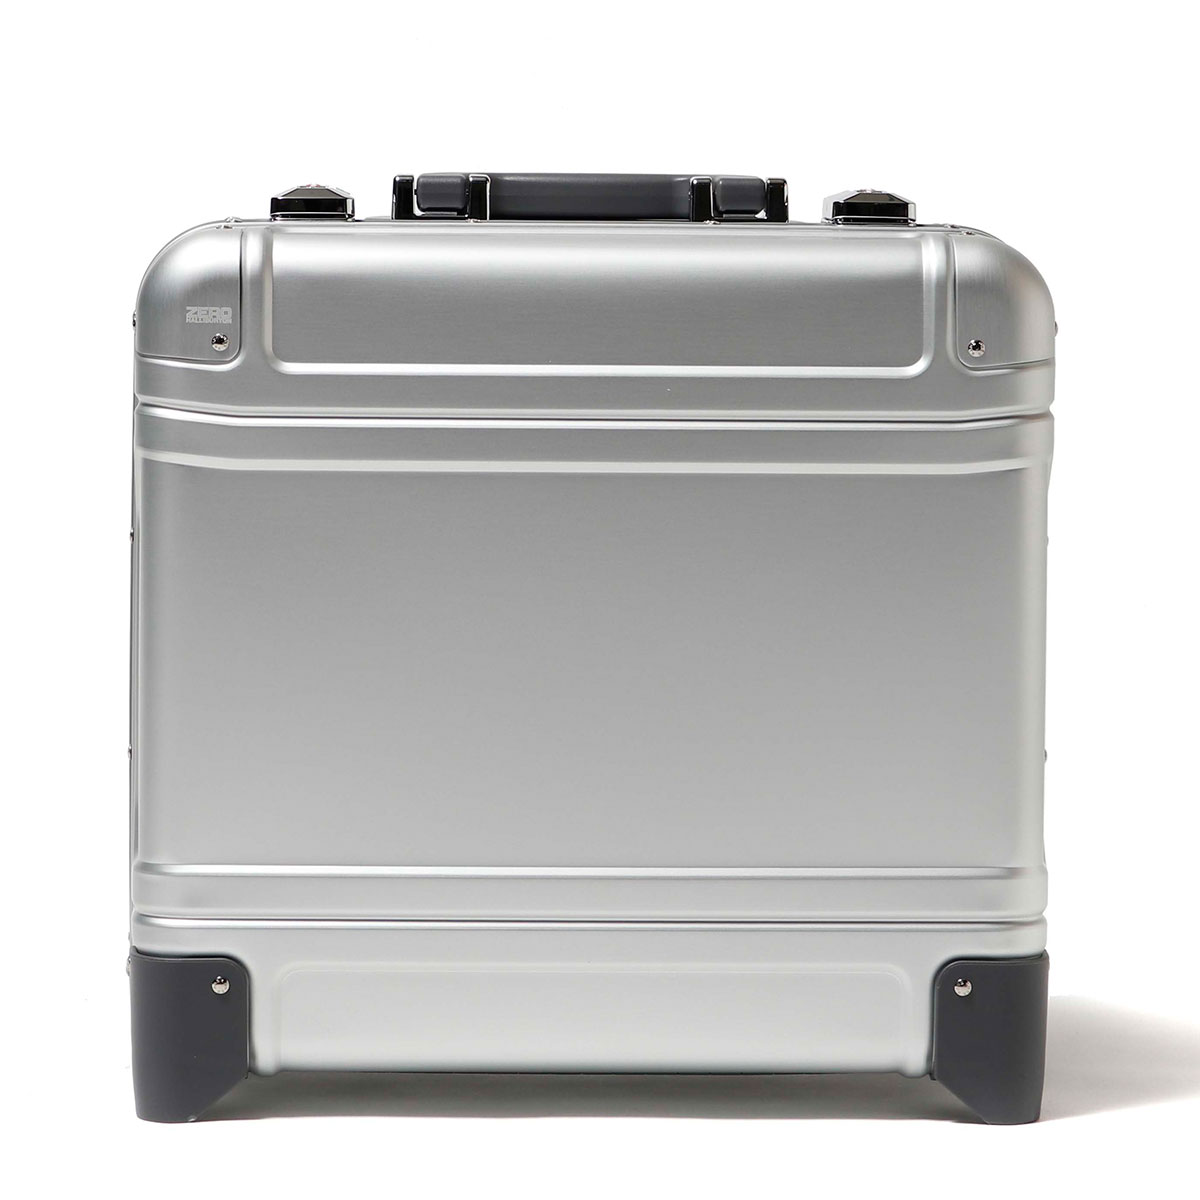 ゼロハリバートン スーツケース 2輪タイプ キャリーケースの人気商品 